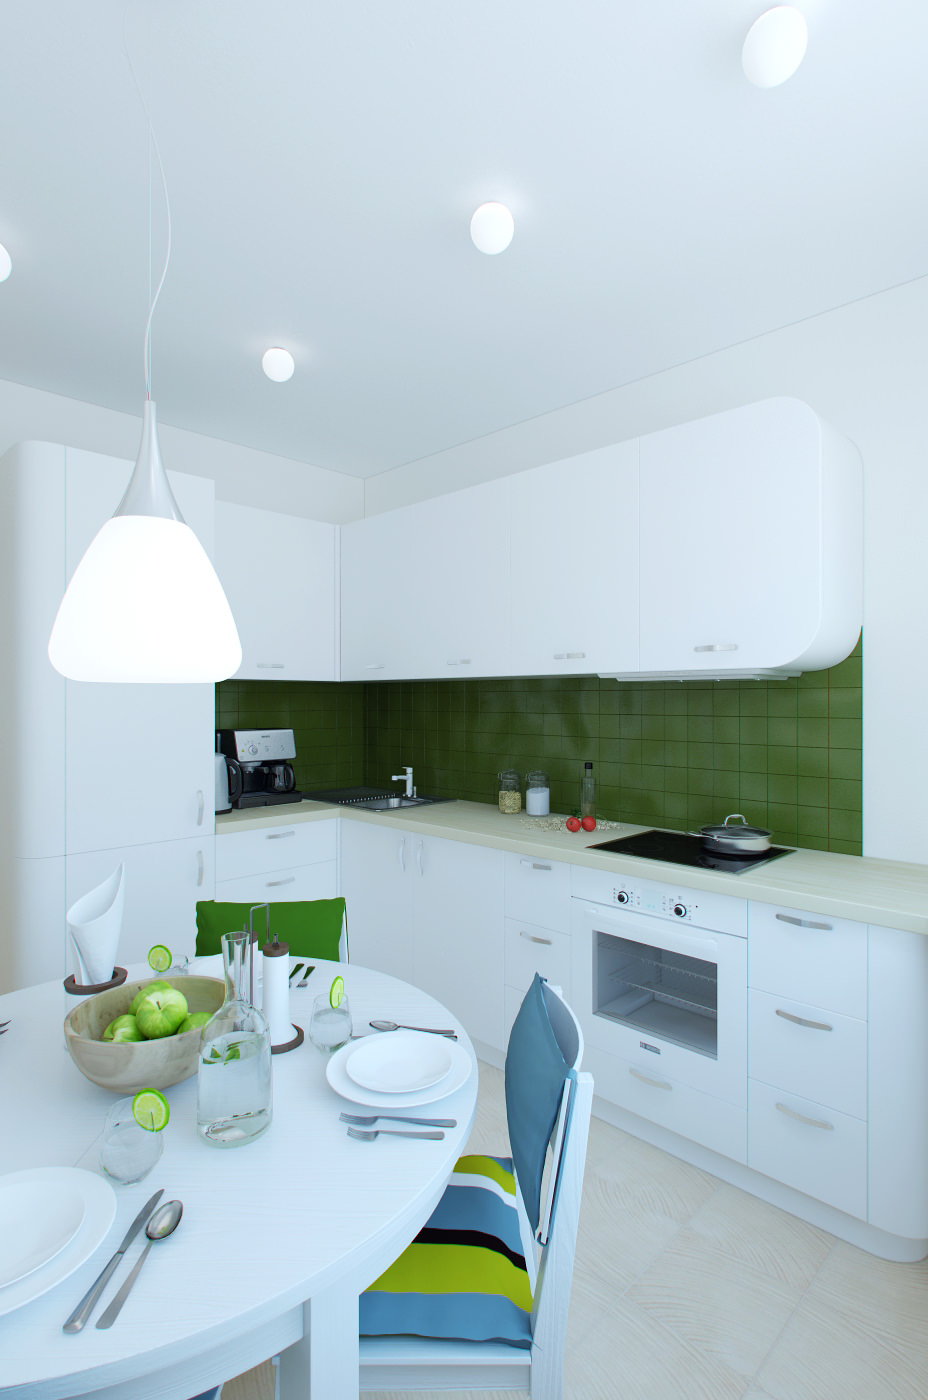 Дизайн интерьера кухни в бело-зеленых тонах